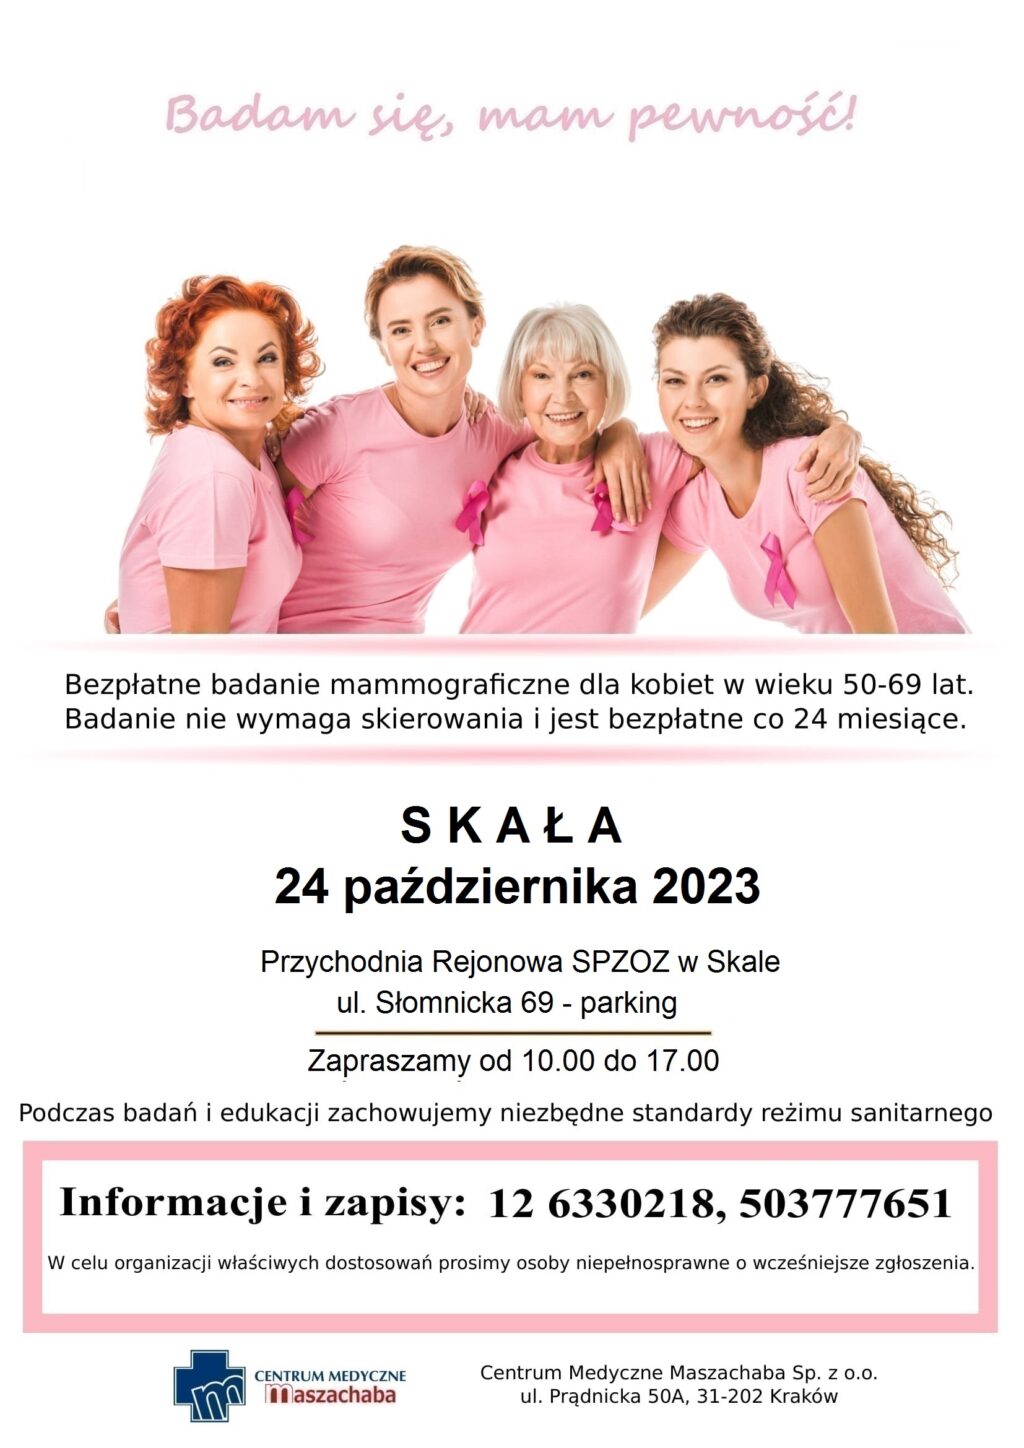 plakat informujacy, że 24.10.2023 odbędzie się badanie mammograficzne w Skale, Parking obok Przychodni Rejonowej w Skale, ul. Słomnicka 69 - rejestracja pod numerem 12 633 02 18